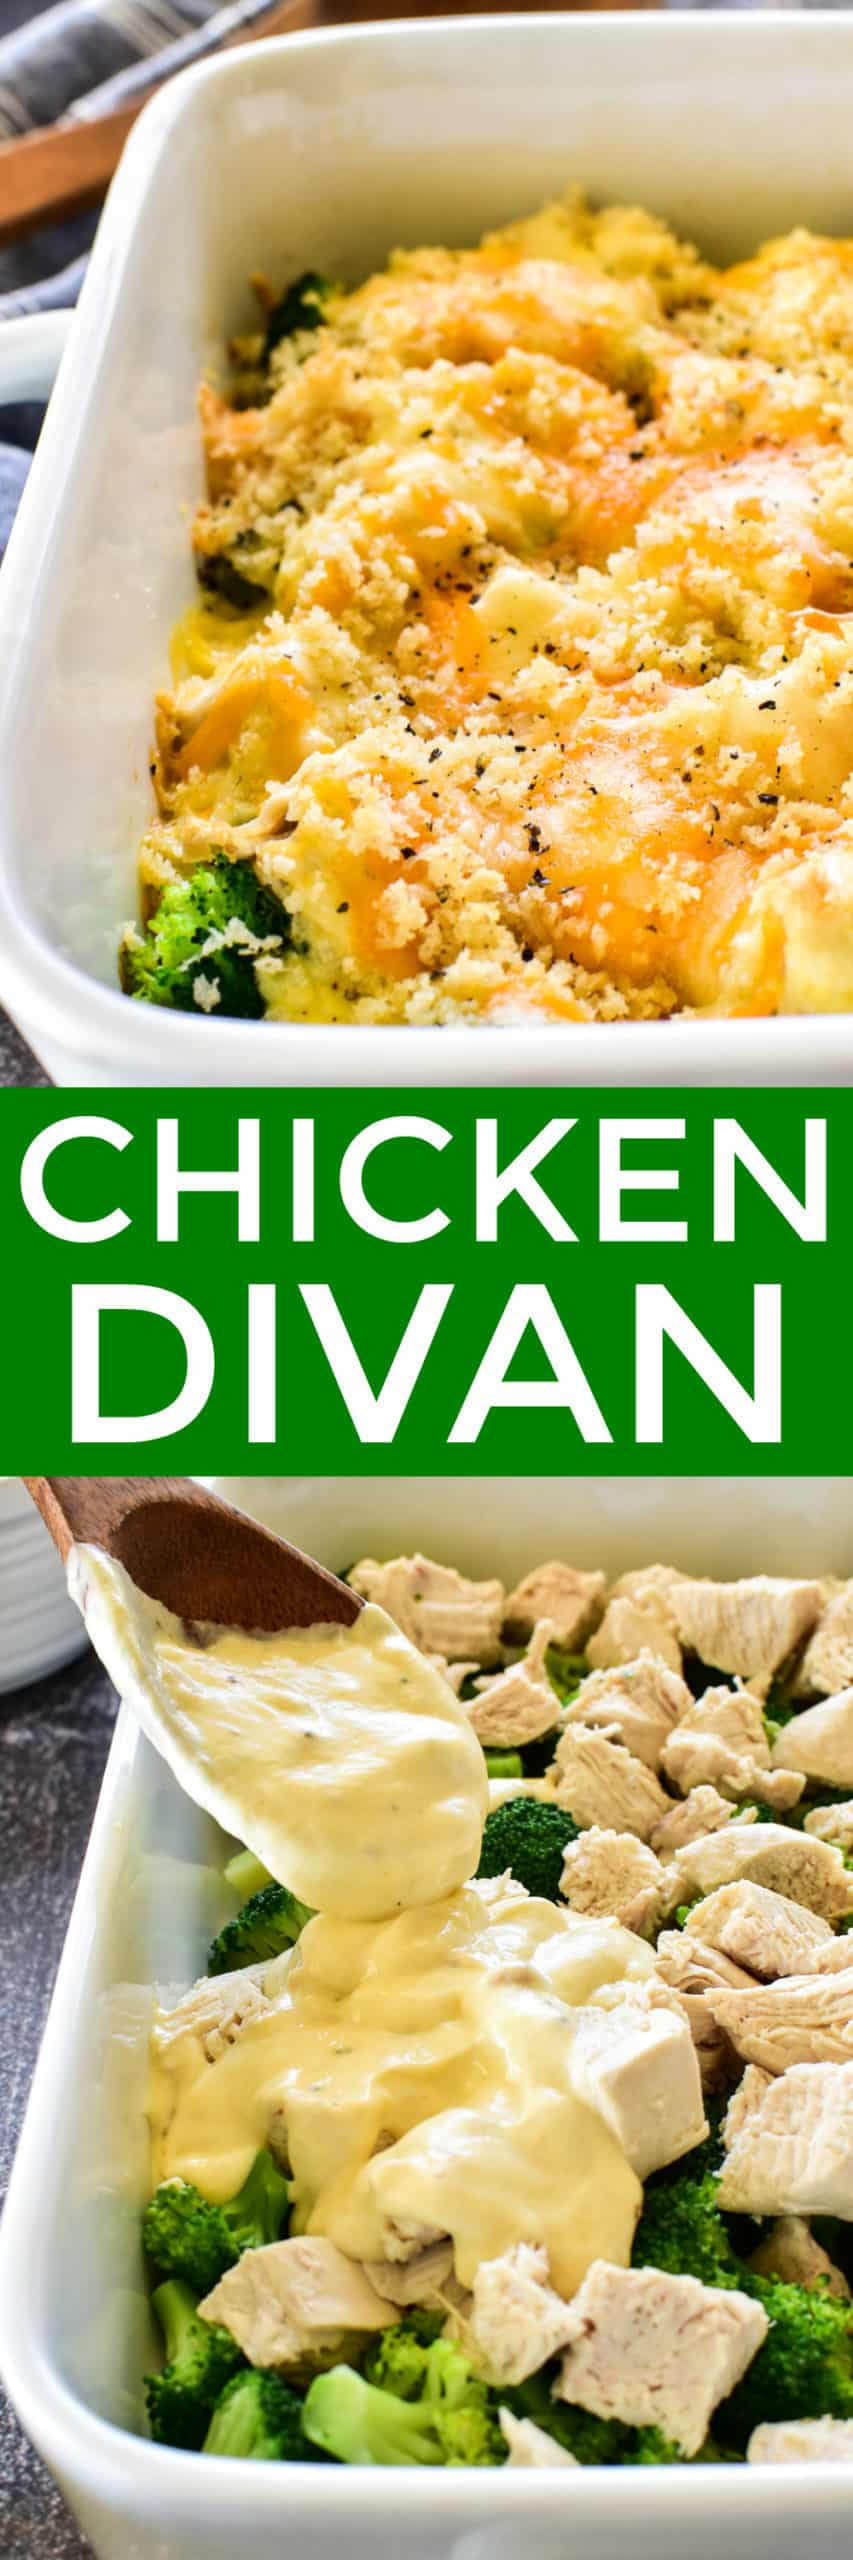 Chicken Divan collage image